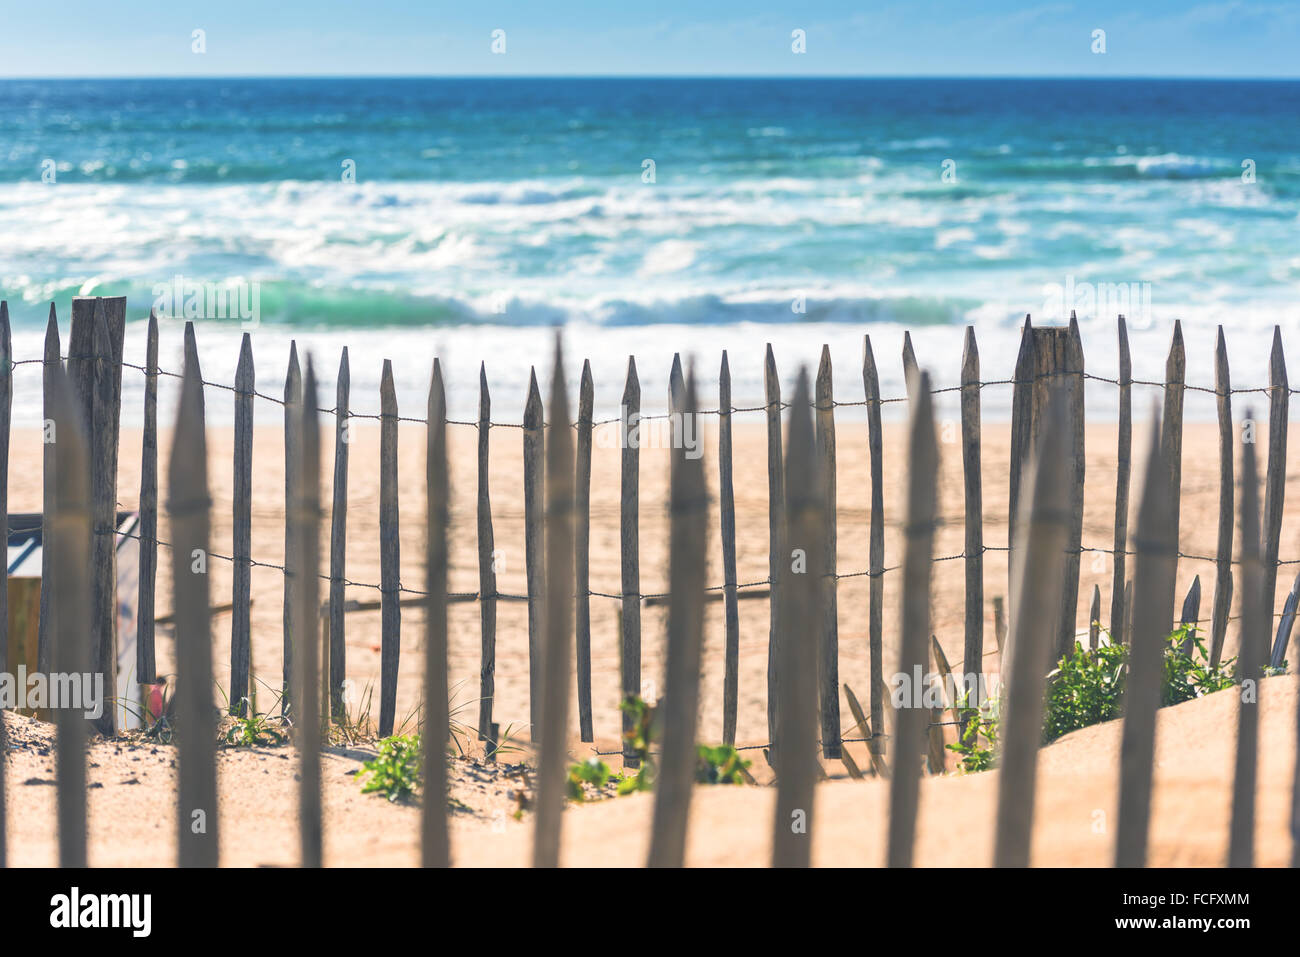 Clôture en bois sur une plage de l'Atlantique en France, le Département de la Gironde. Tourné avec un focus sélectif Banque D'Images